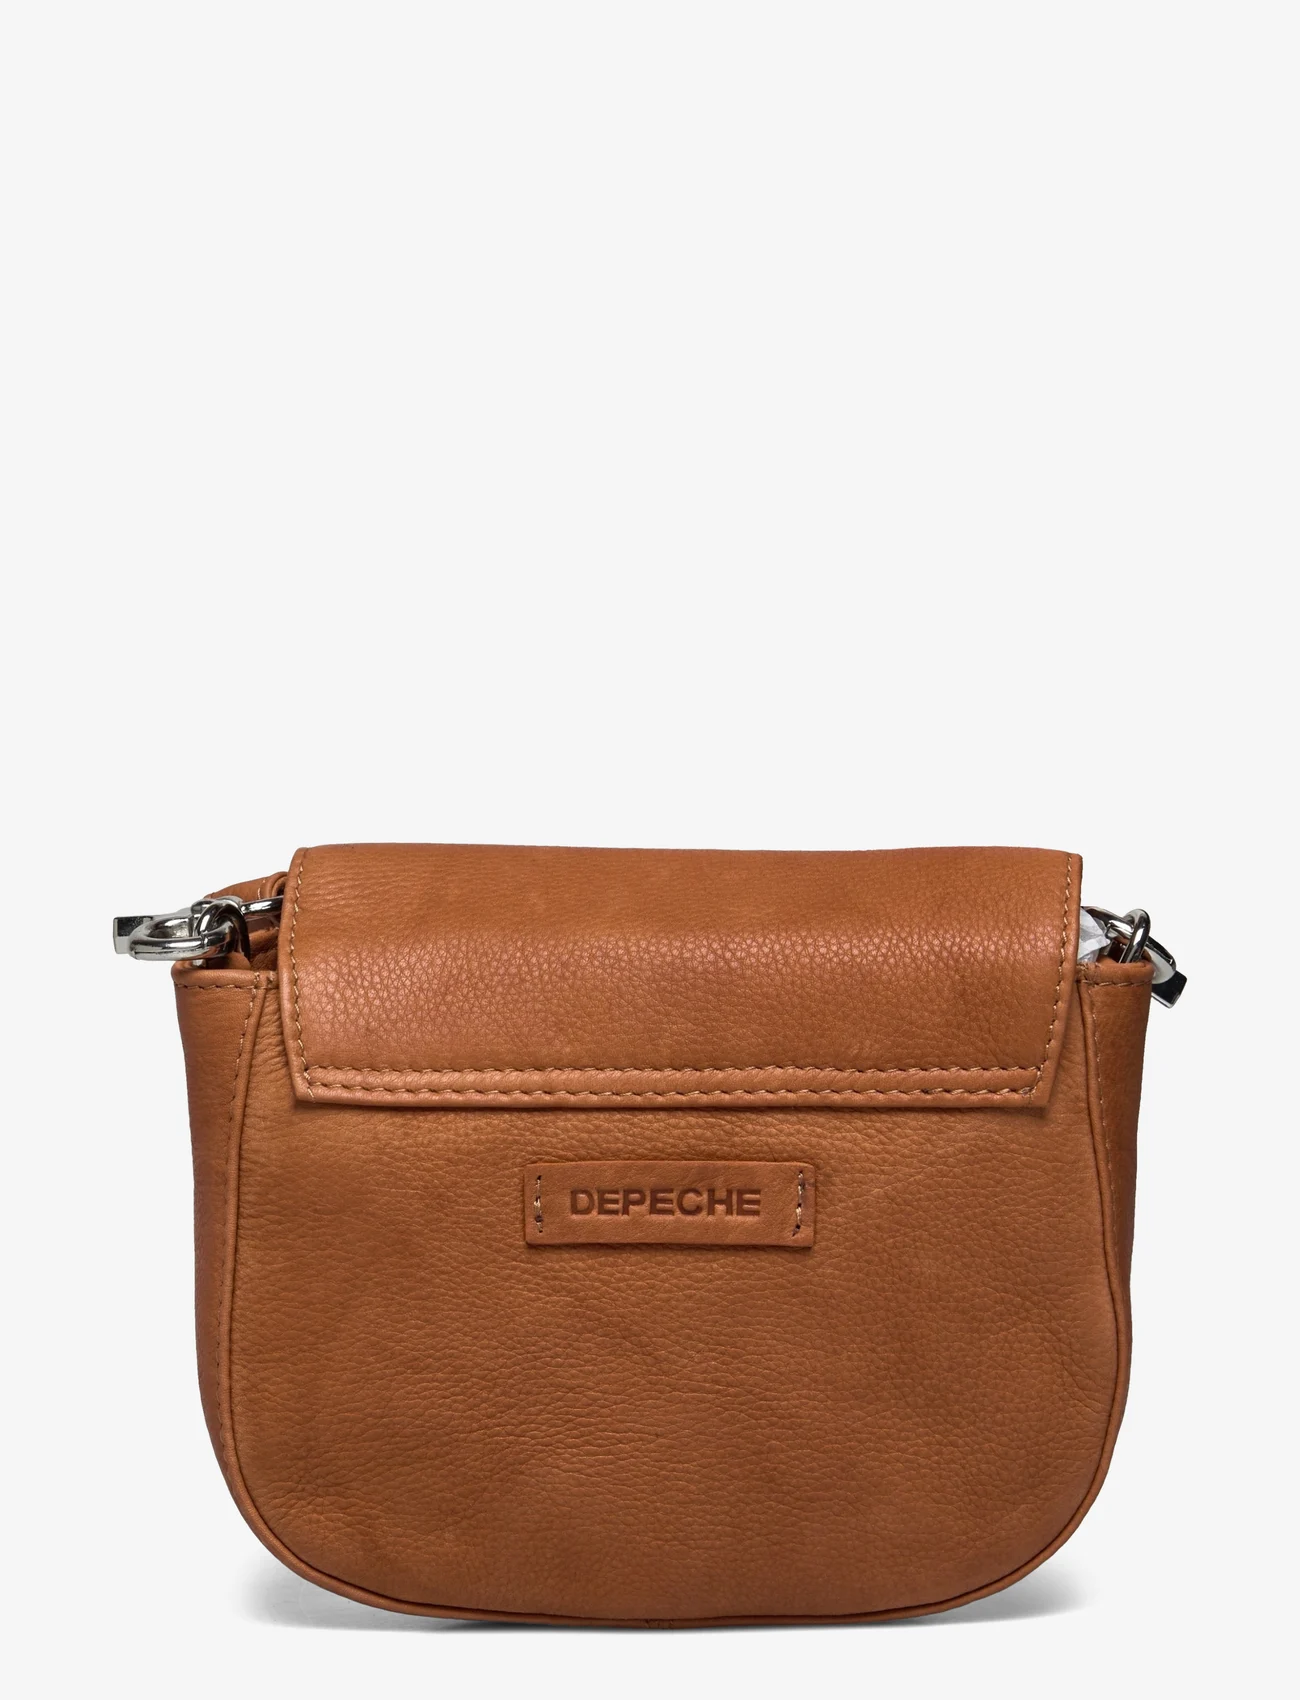 DEPECHE - Small bag / Clutch - festmode zu outlet-preisen - 014 cognac - 1